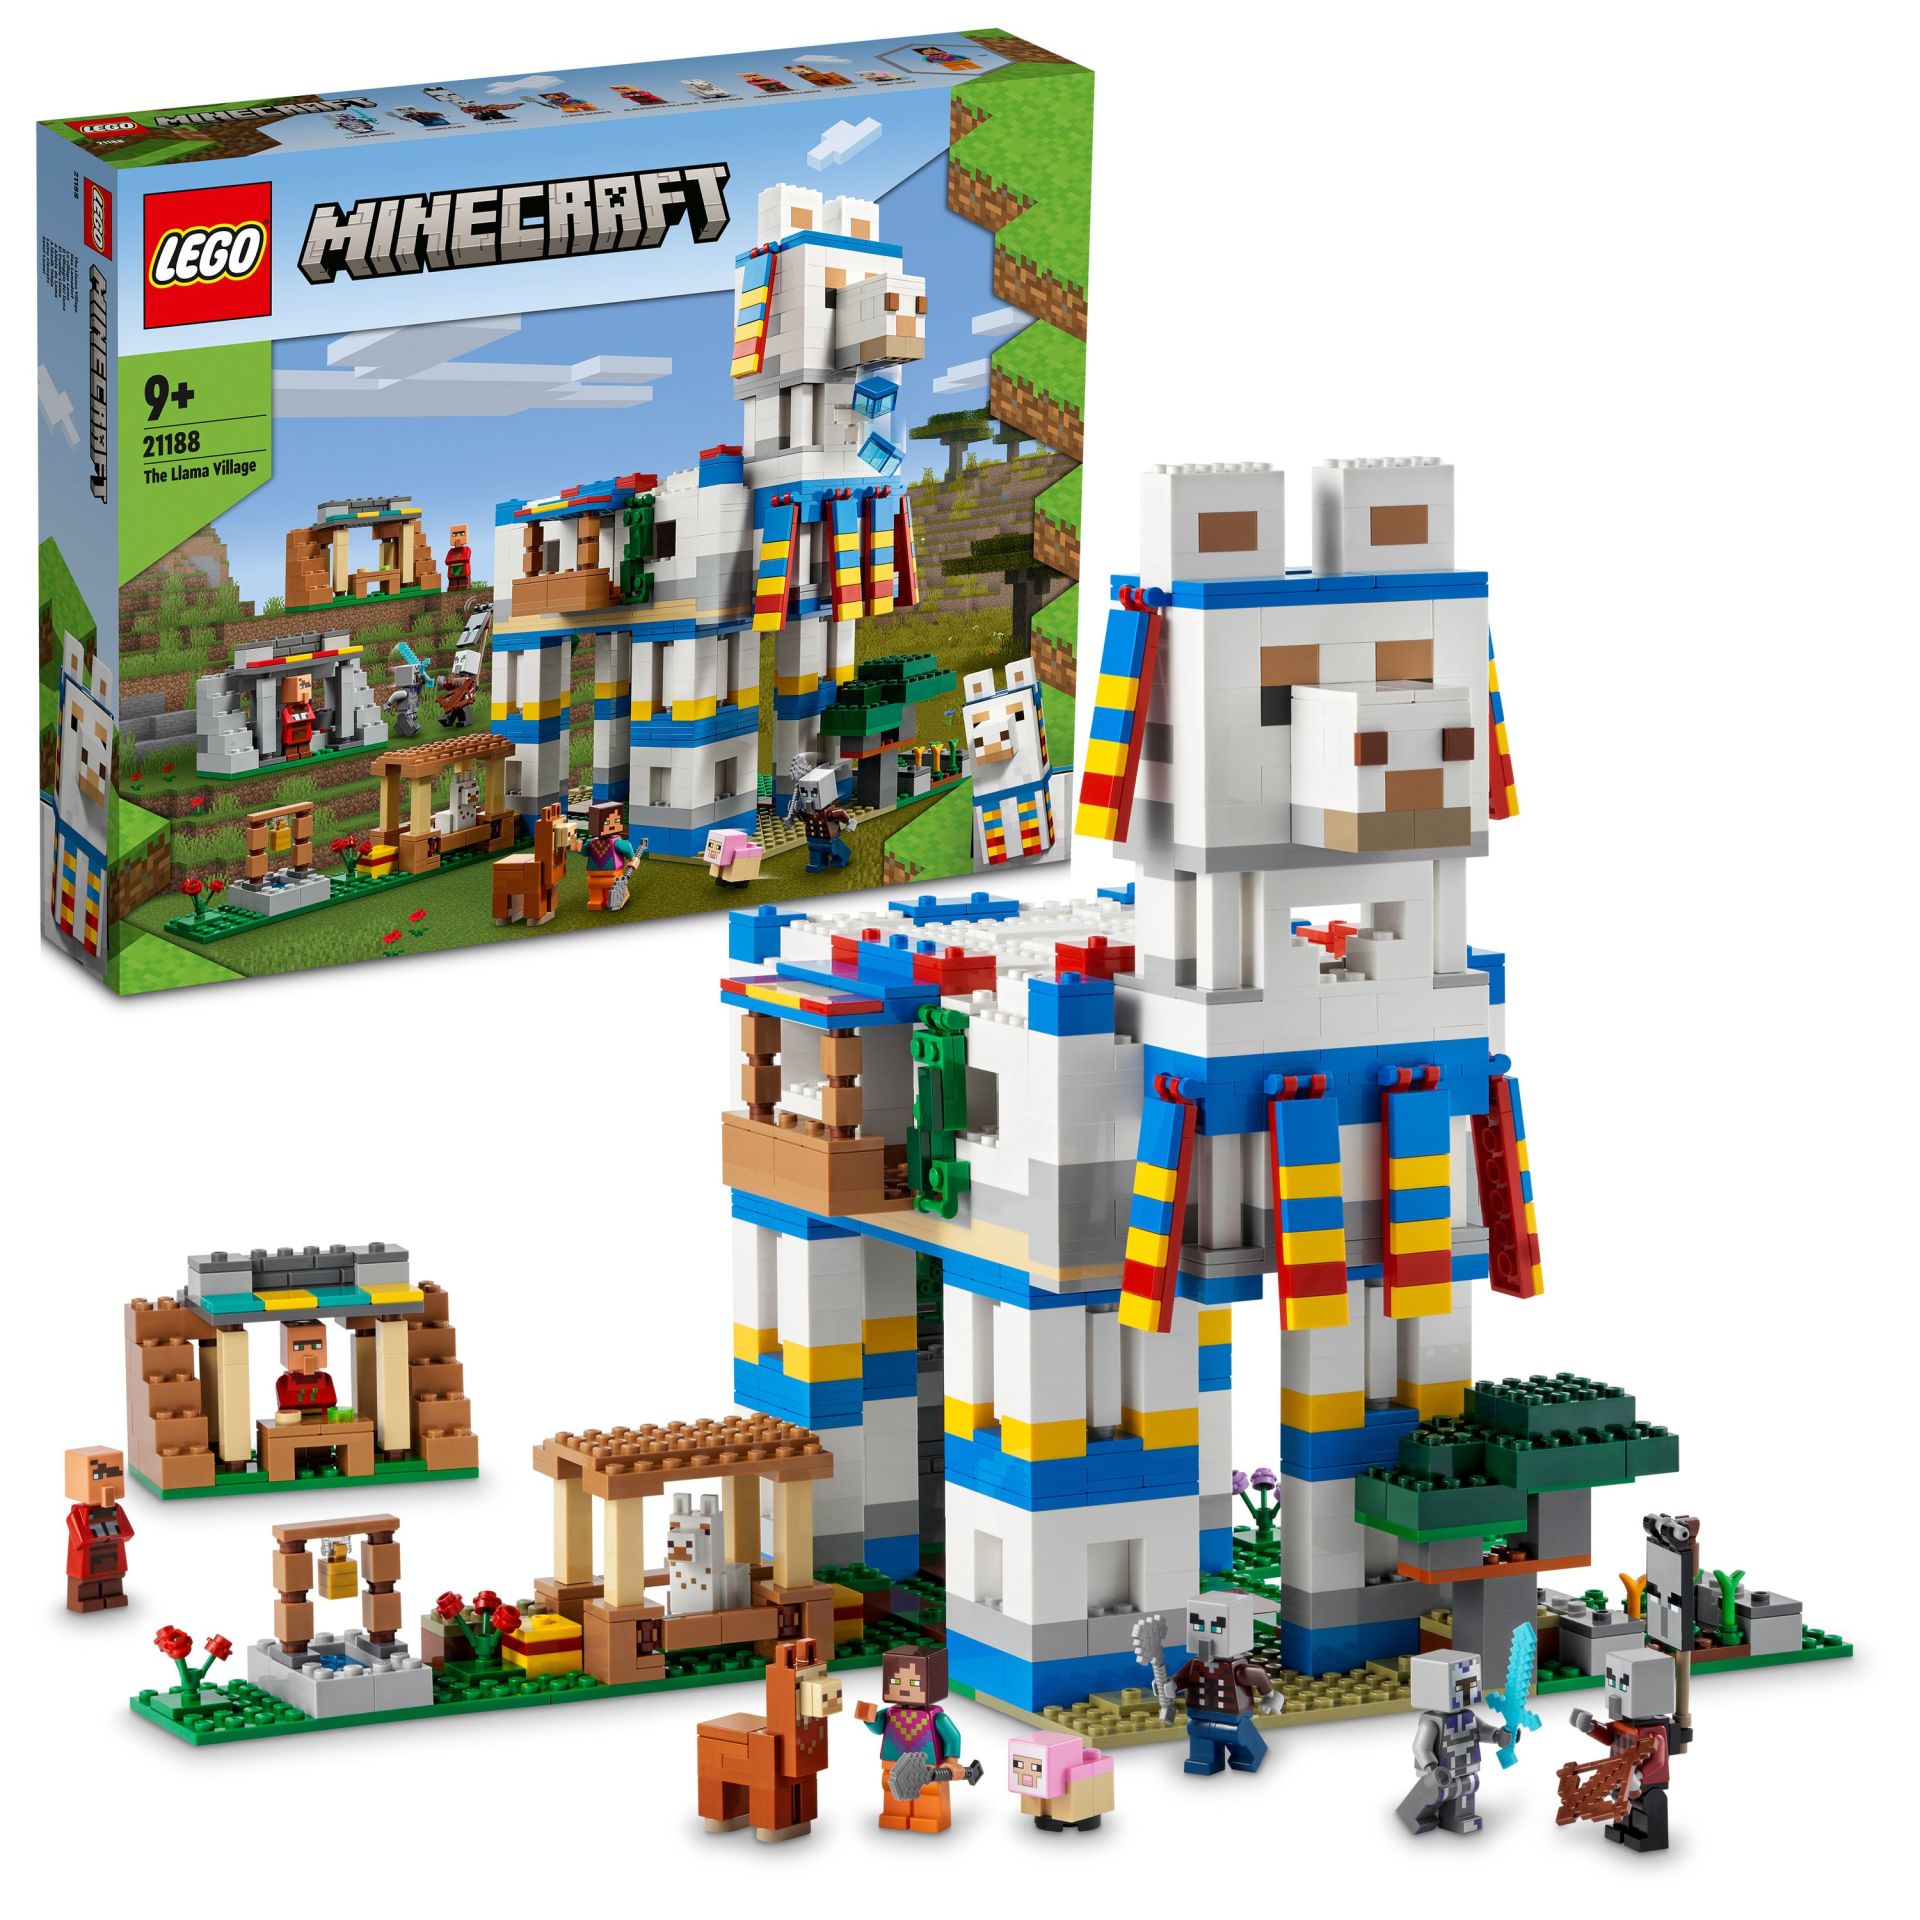 LEGO® Minecraft® Lama Köyü 21188 - 9 Yaş ve Üzeri Çocuklar için Hayvan ve Açılan Ev İçeren Oyuncak Yapım Seti (1252 Parça)